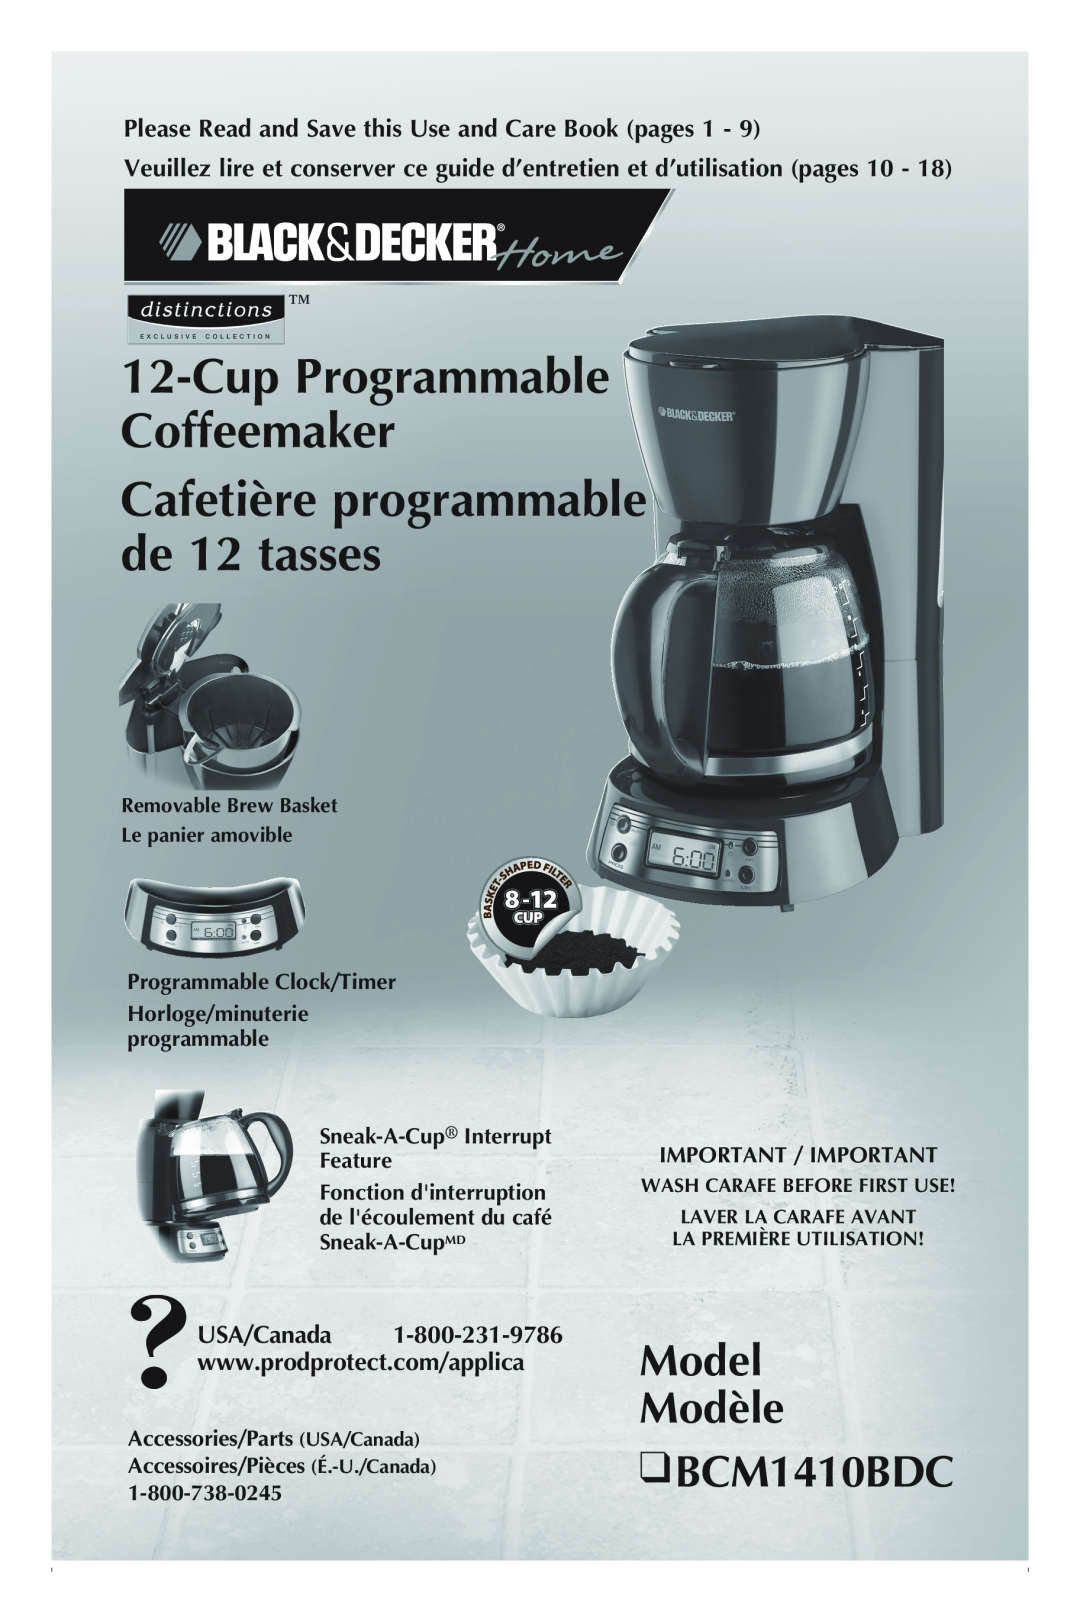 Black & Decker manual Model Modèle BCM1410BDC, Cup Programmable Coffeemaker Cafetière programmable de 12 tasses 